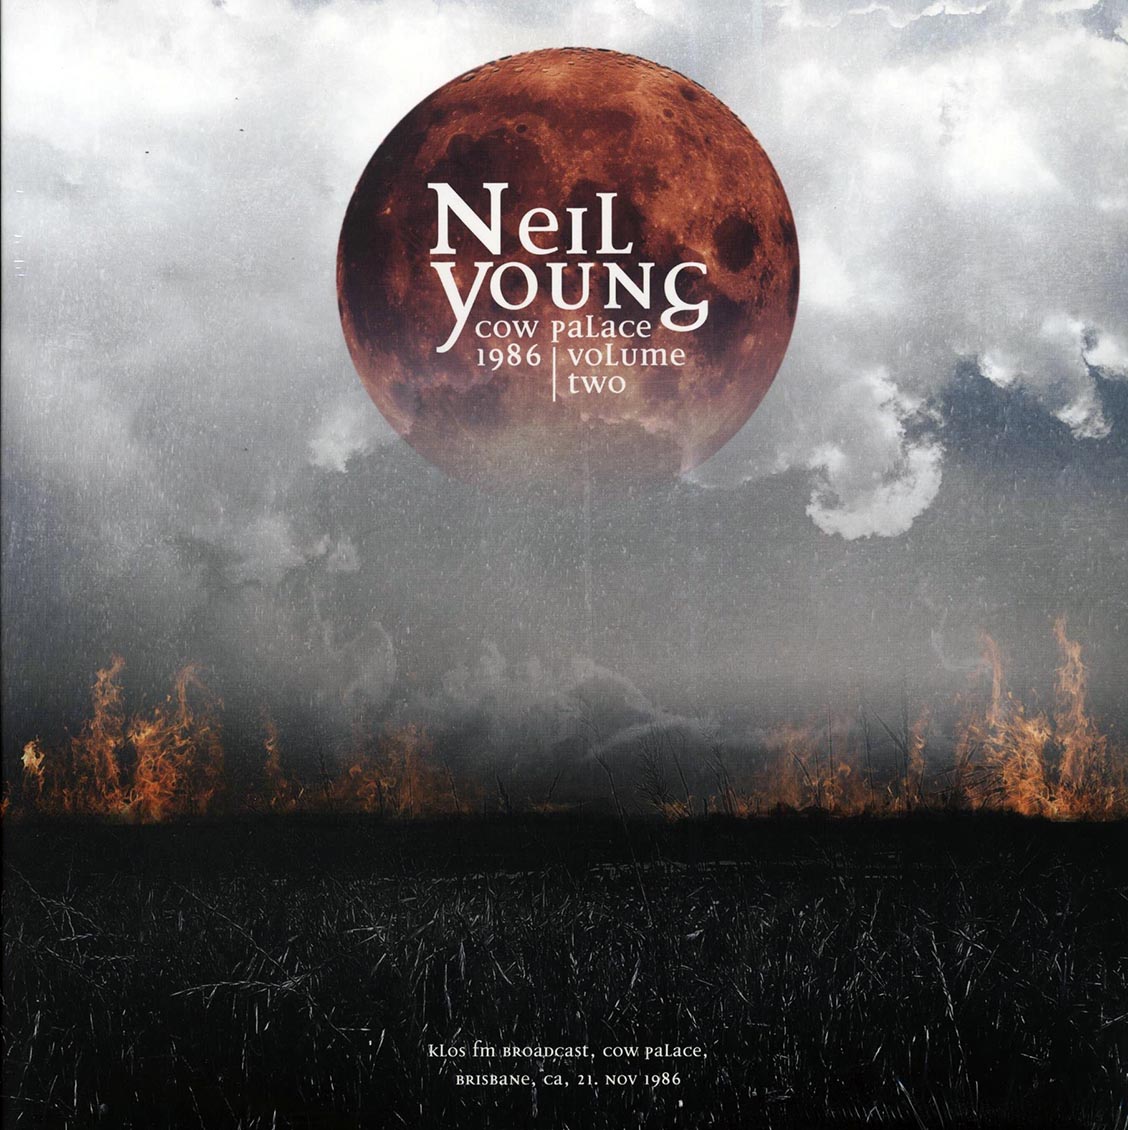 Neil Young - Cow Palace 1986 Volume 2 (ltd. ed.) (2xLP) - Vinyl LP